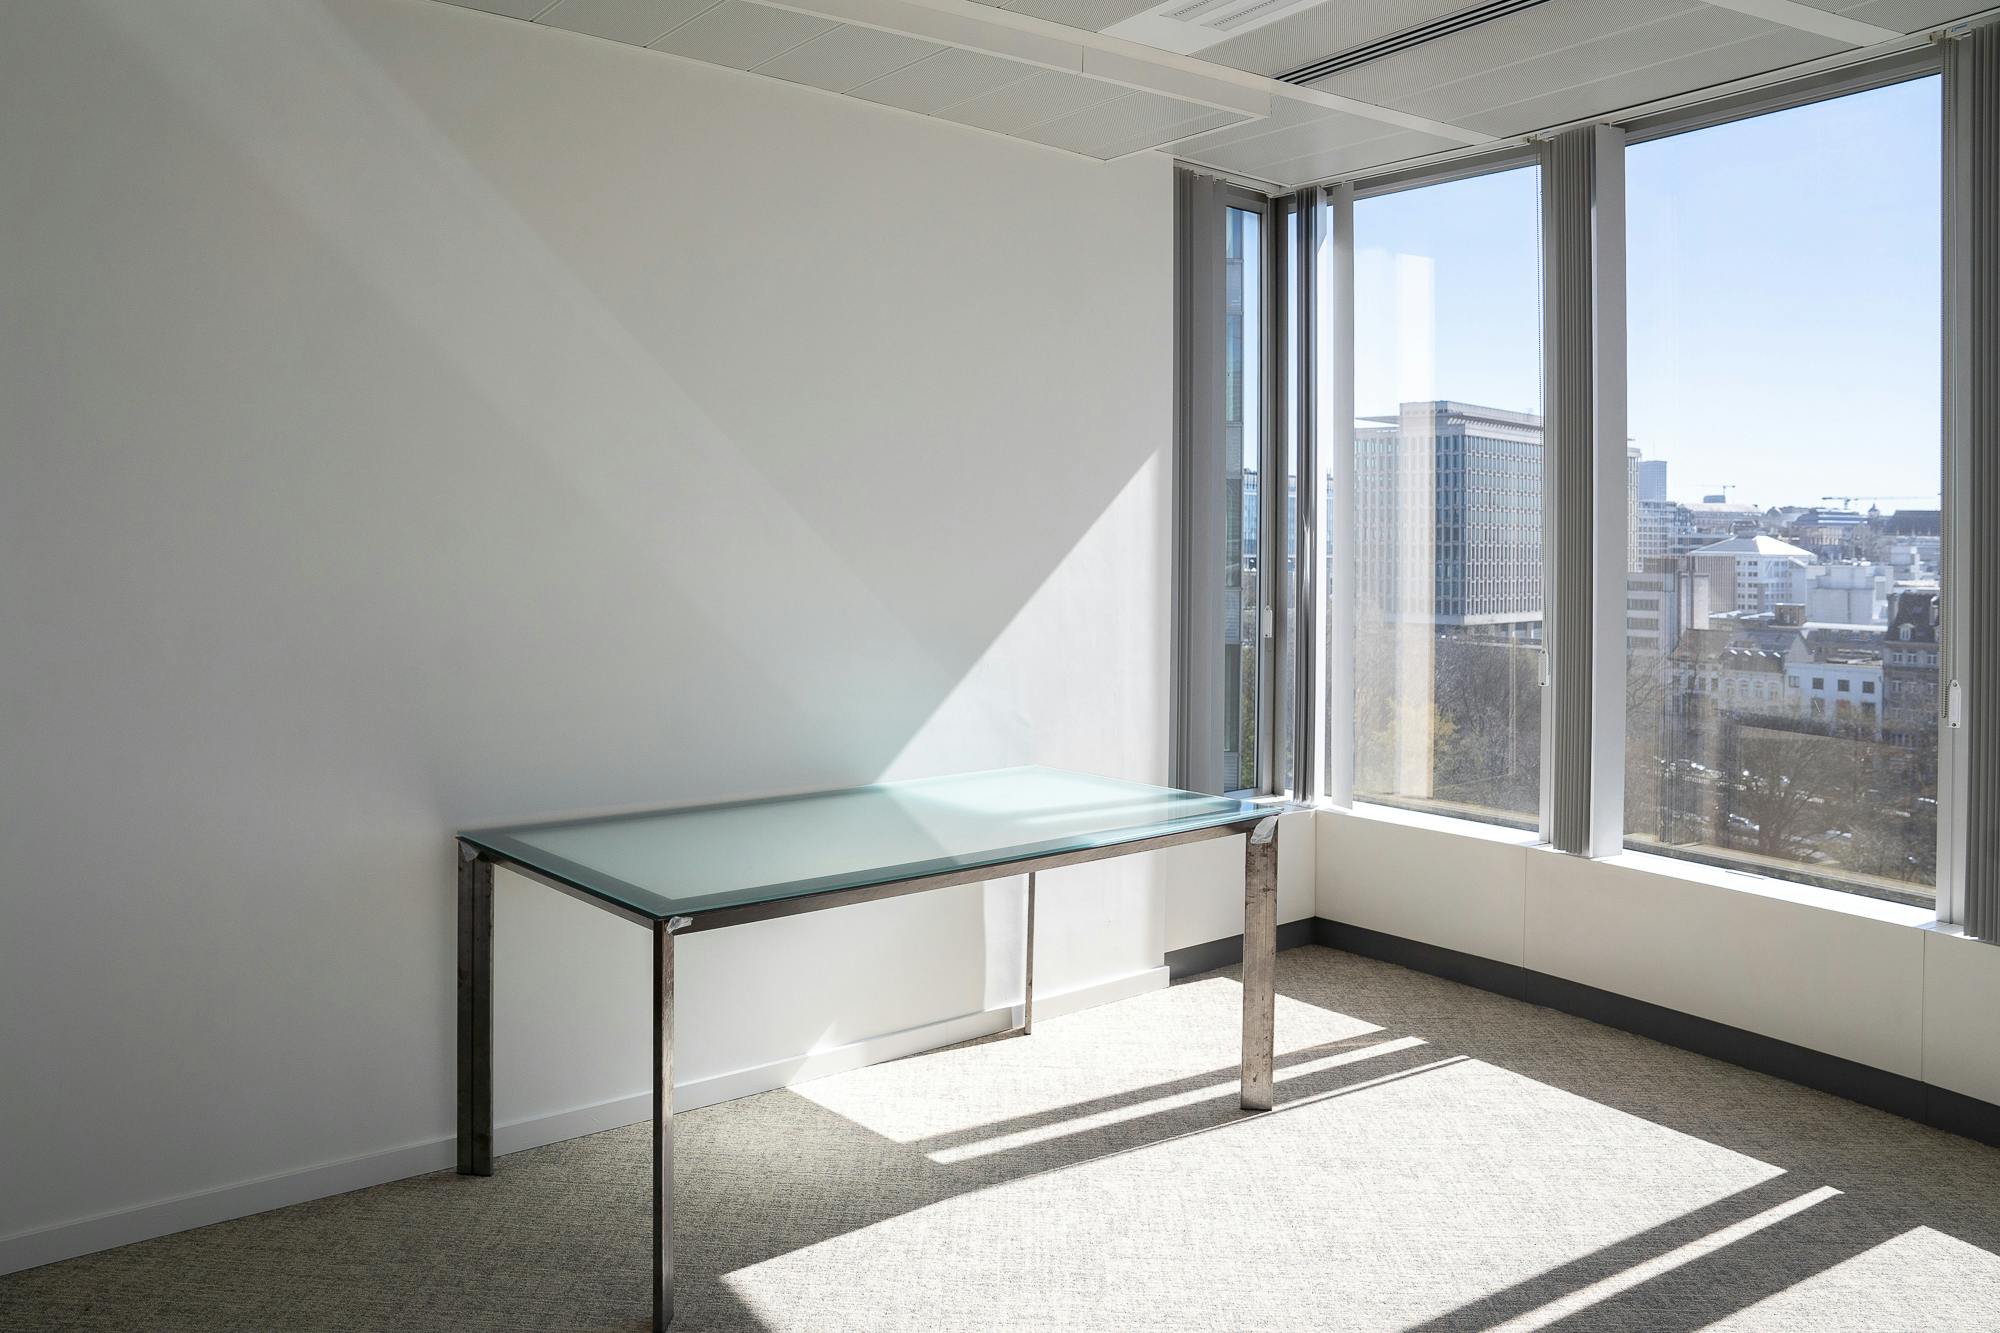 DESIGN Desk - Tweedehands kwaliteit "Bureaus" - Relieve Furniture